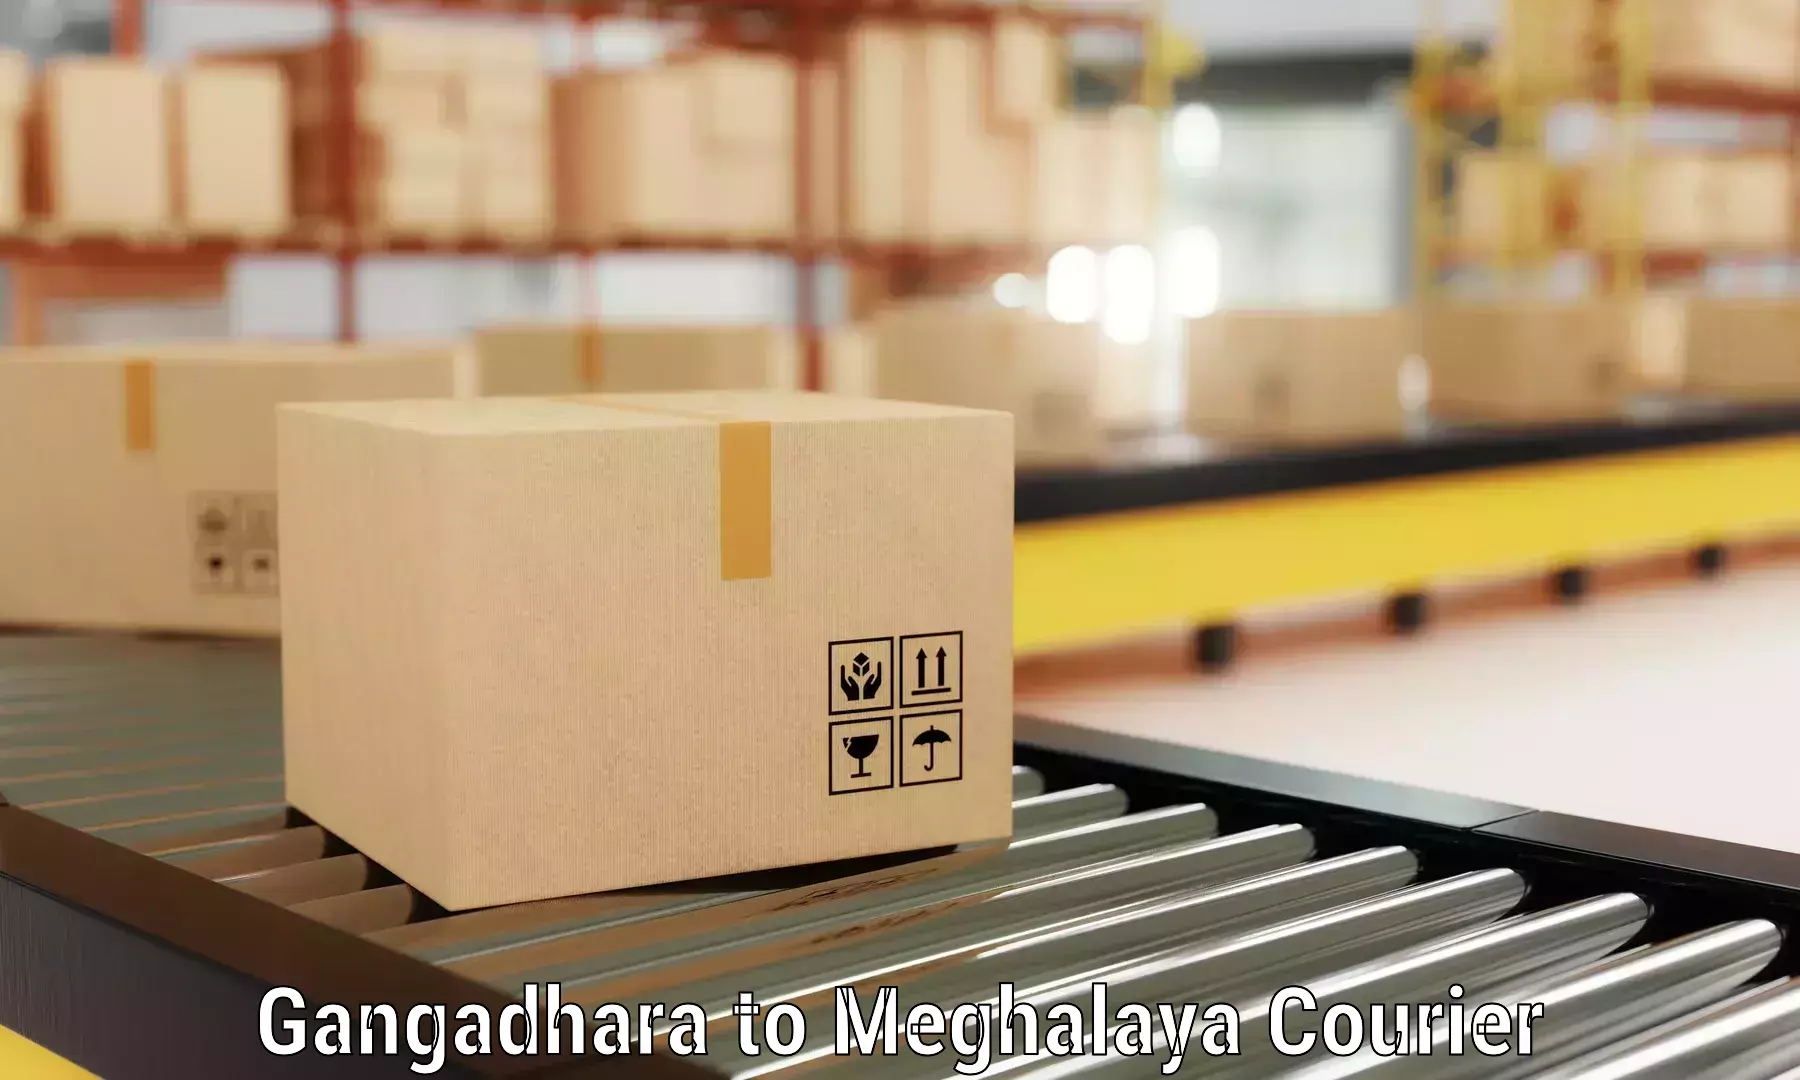 Furniture transport service Gangadhara to NIT Meghalaya